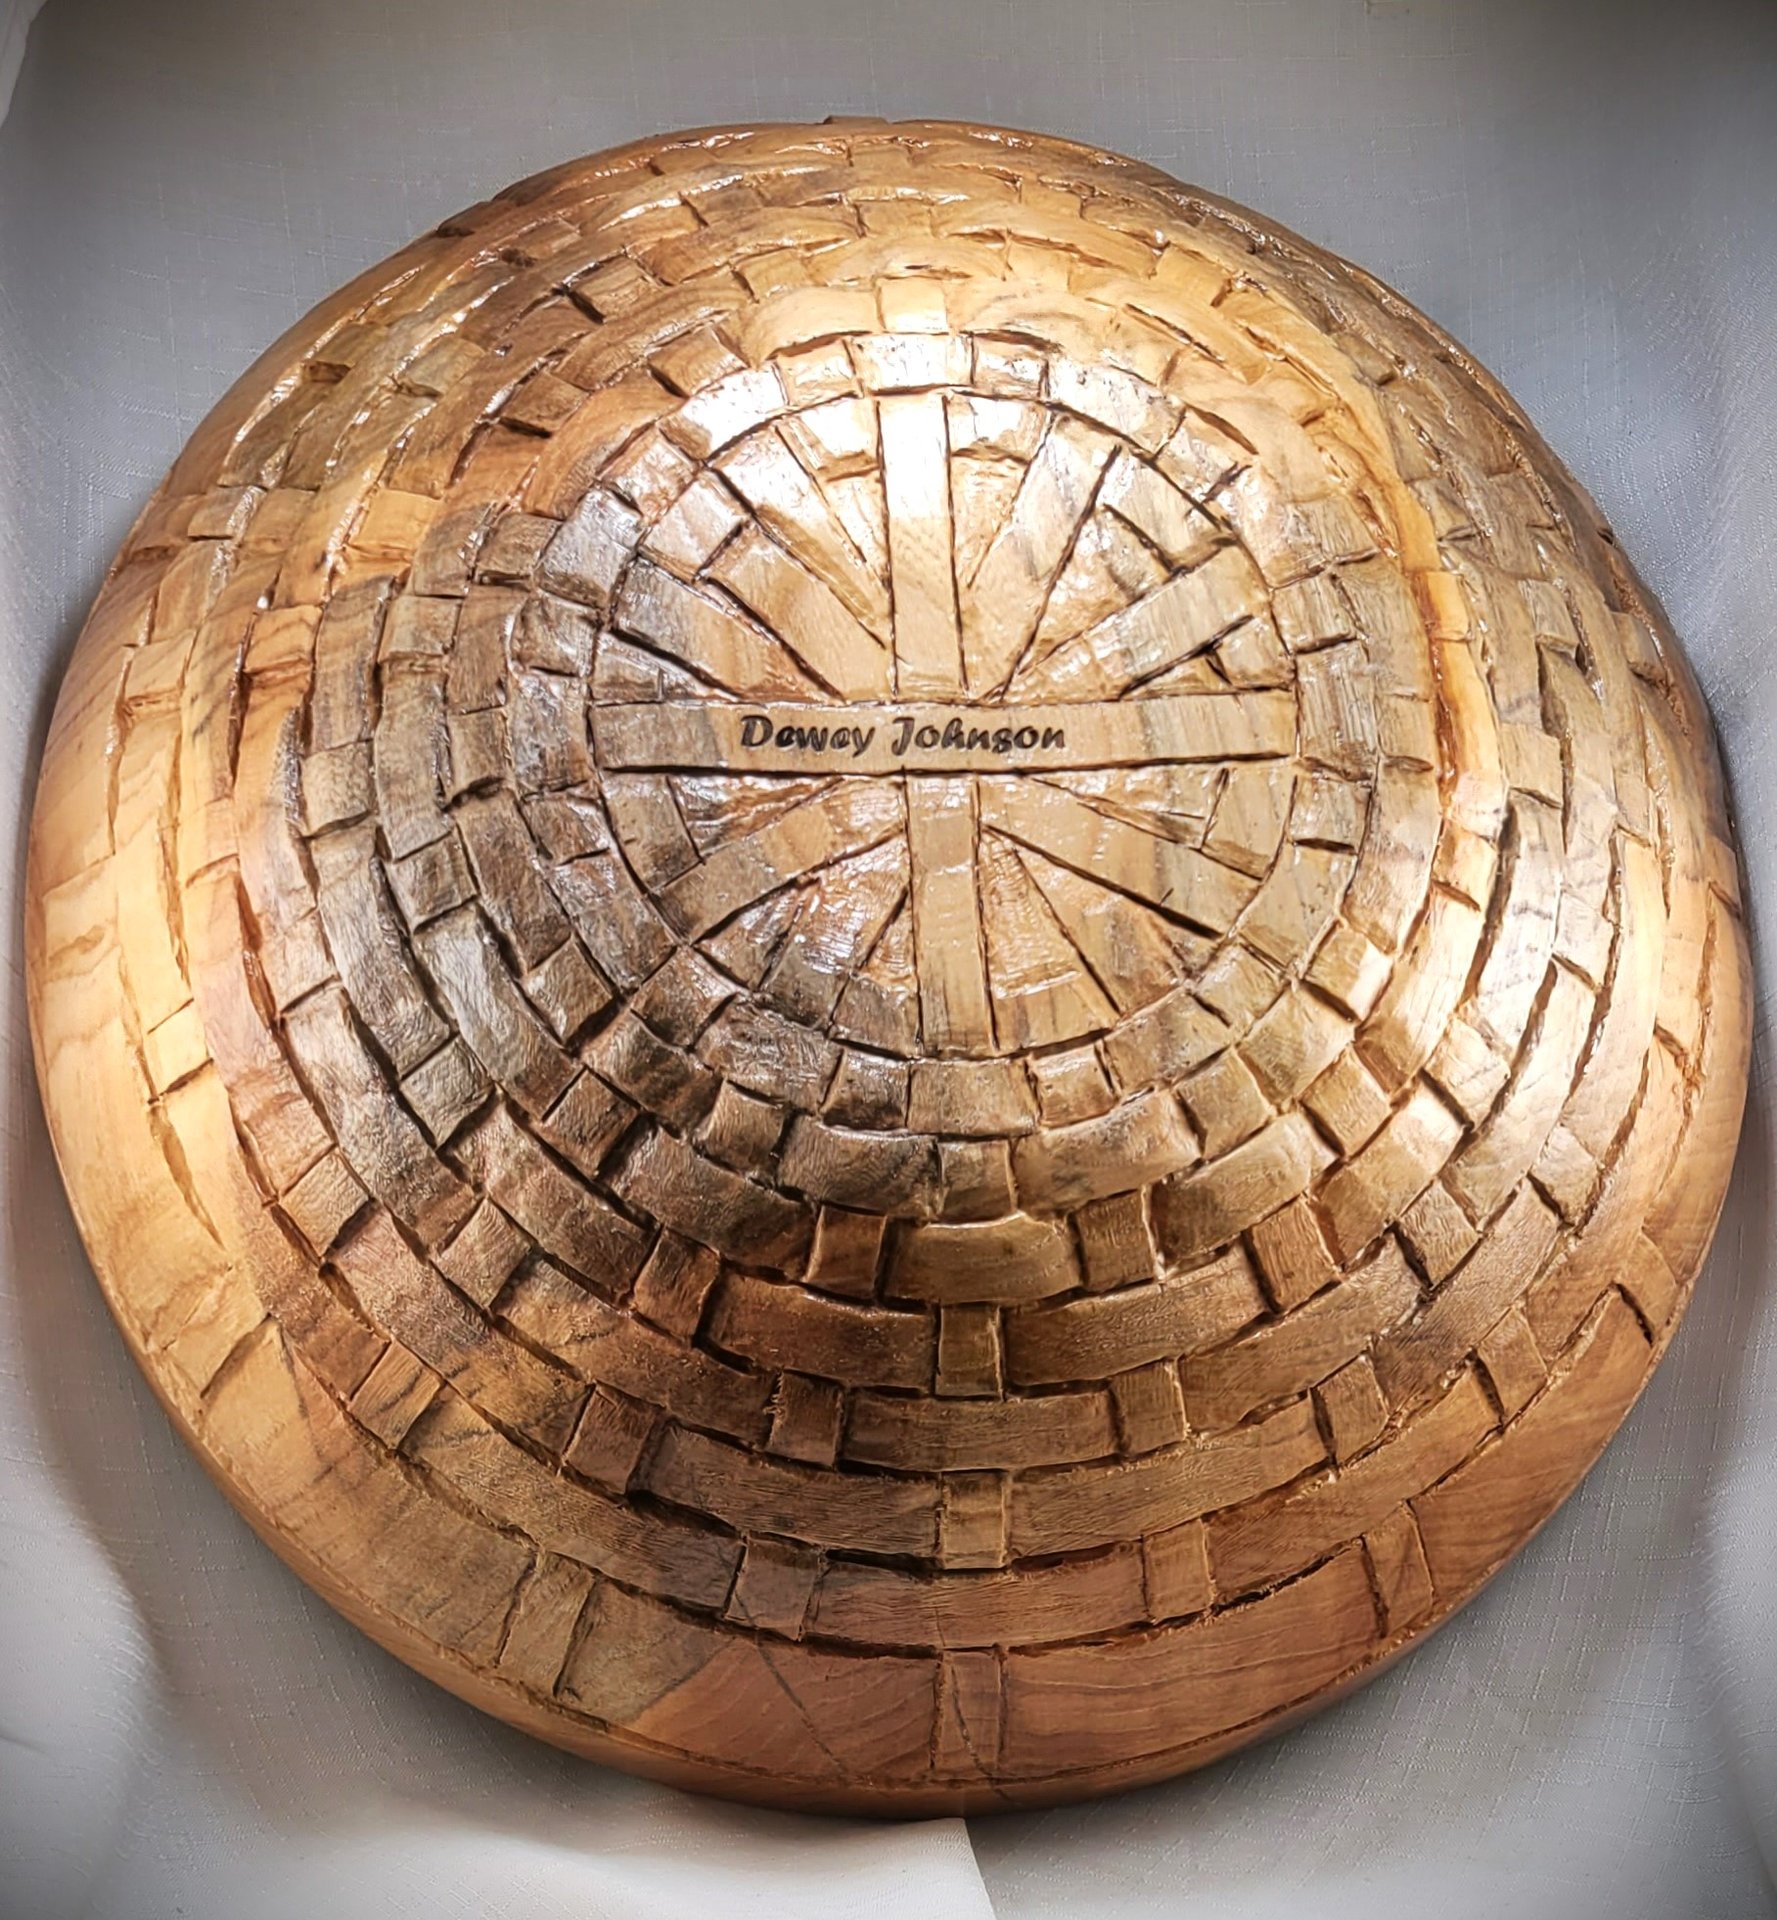 Bottom of Basket Weave ash bowl